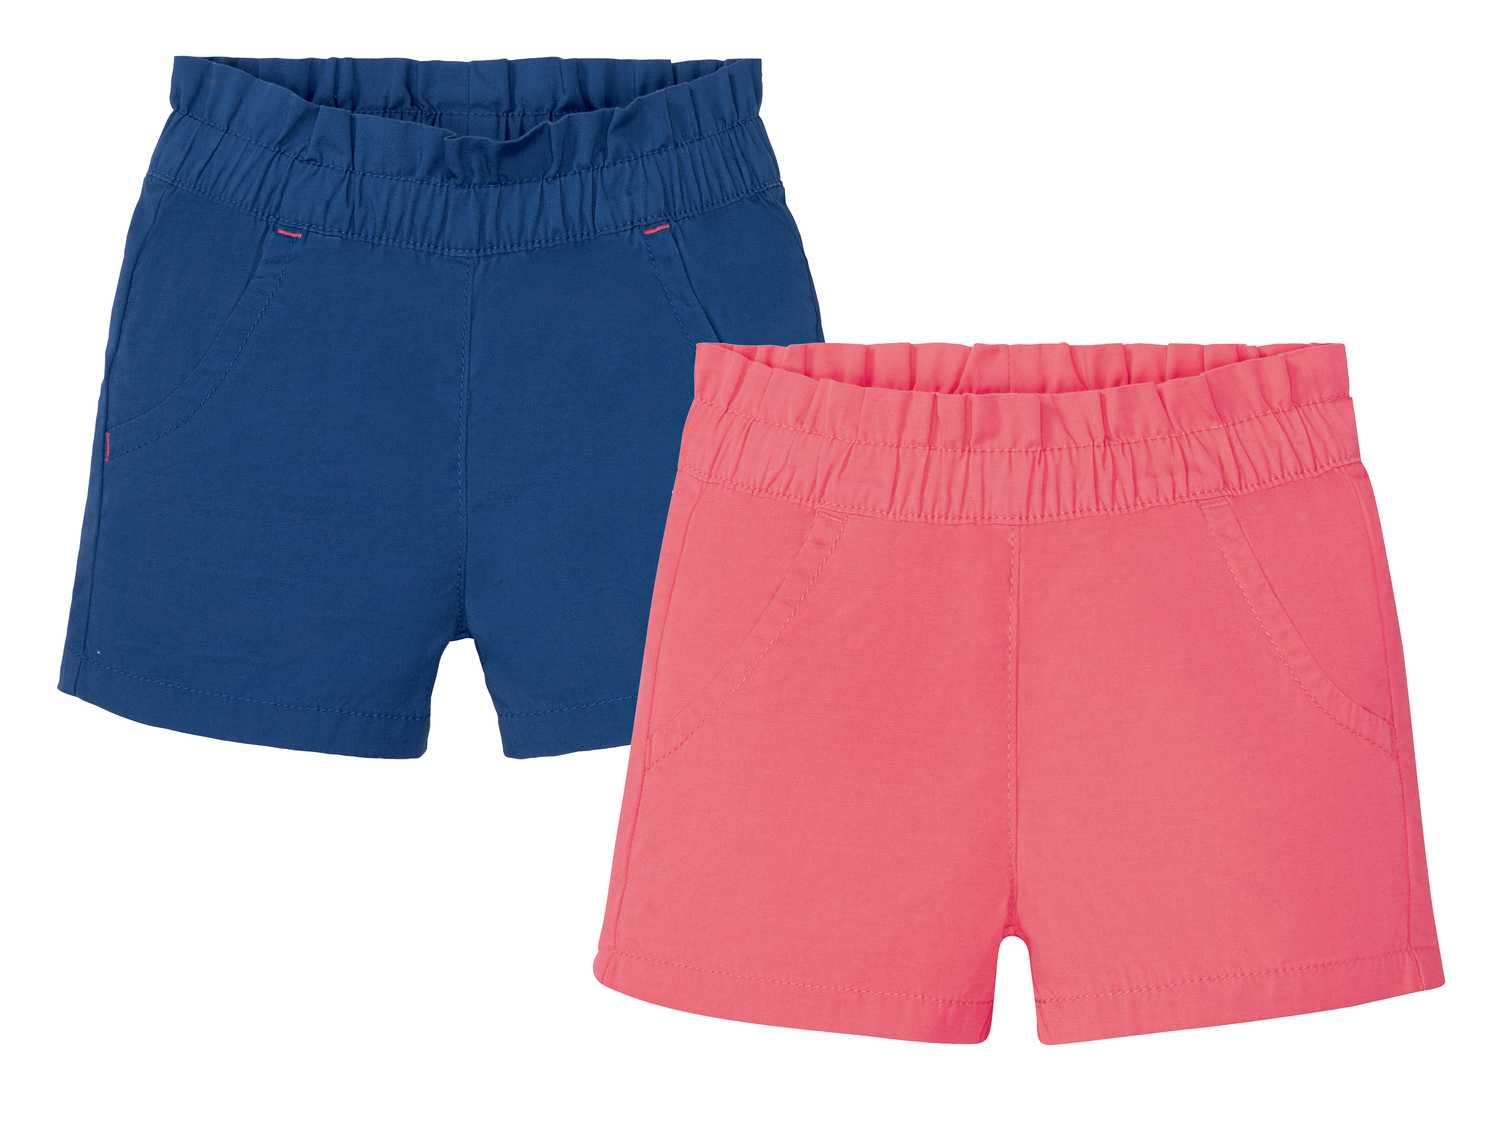 Shorts per bambina Lupilu, prezzo 6.99 &#8364; 
2 pezzi - Misure: 1-6 anni 
- ...